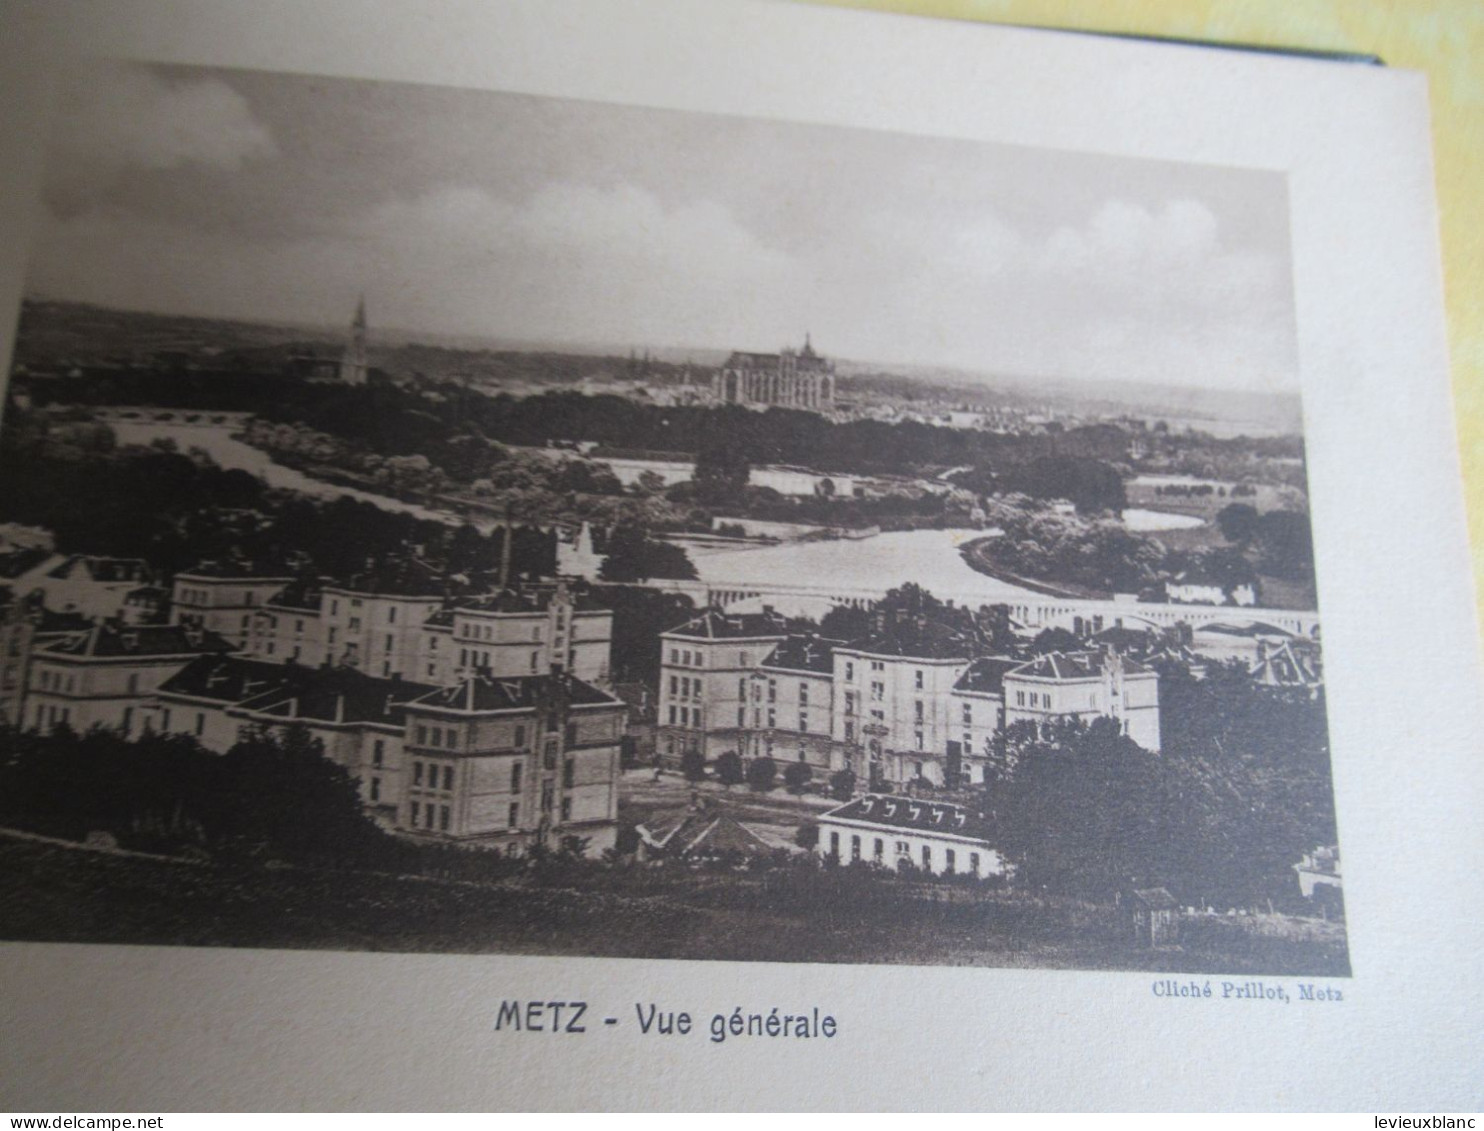 Carnet Souvenir 17 Vues De METZ/offert Par La Maison FABRE/grainetier/METZ (Moselle) /rue Mazelle/vers  1920-30   PGC552 - Tourism Brochures